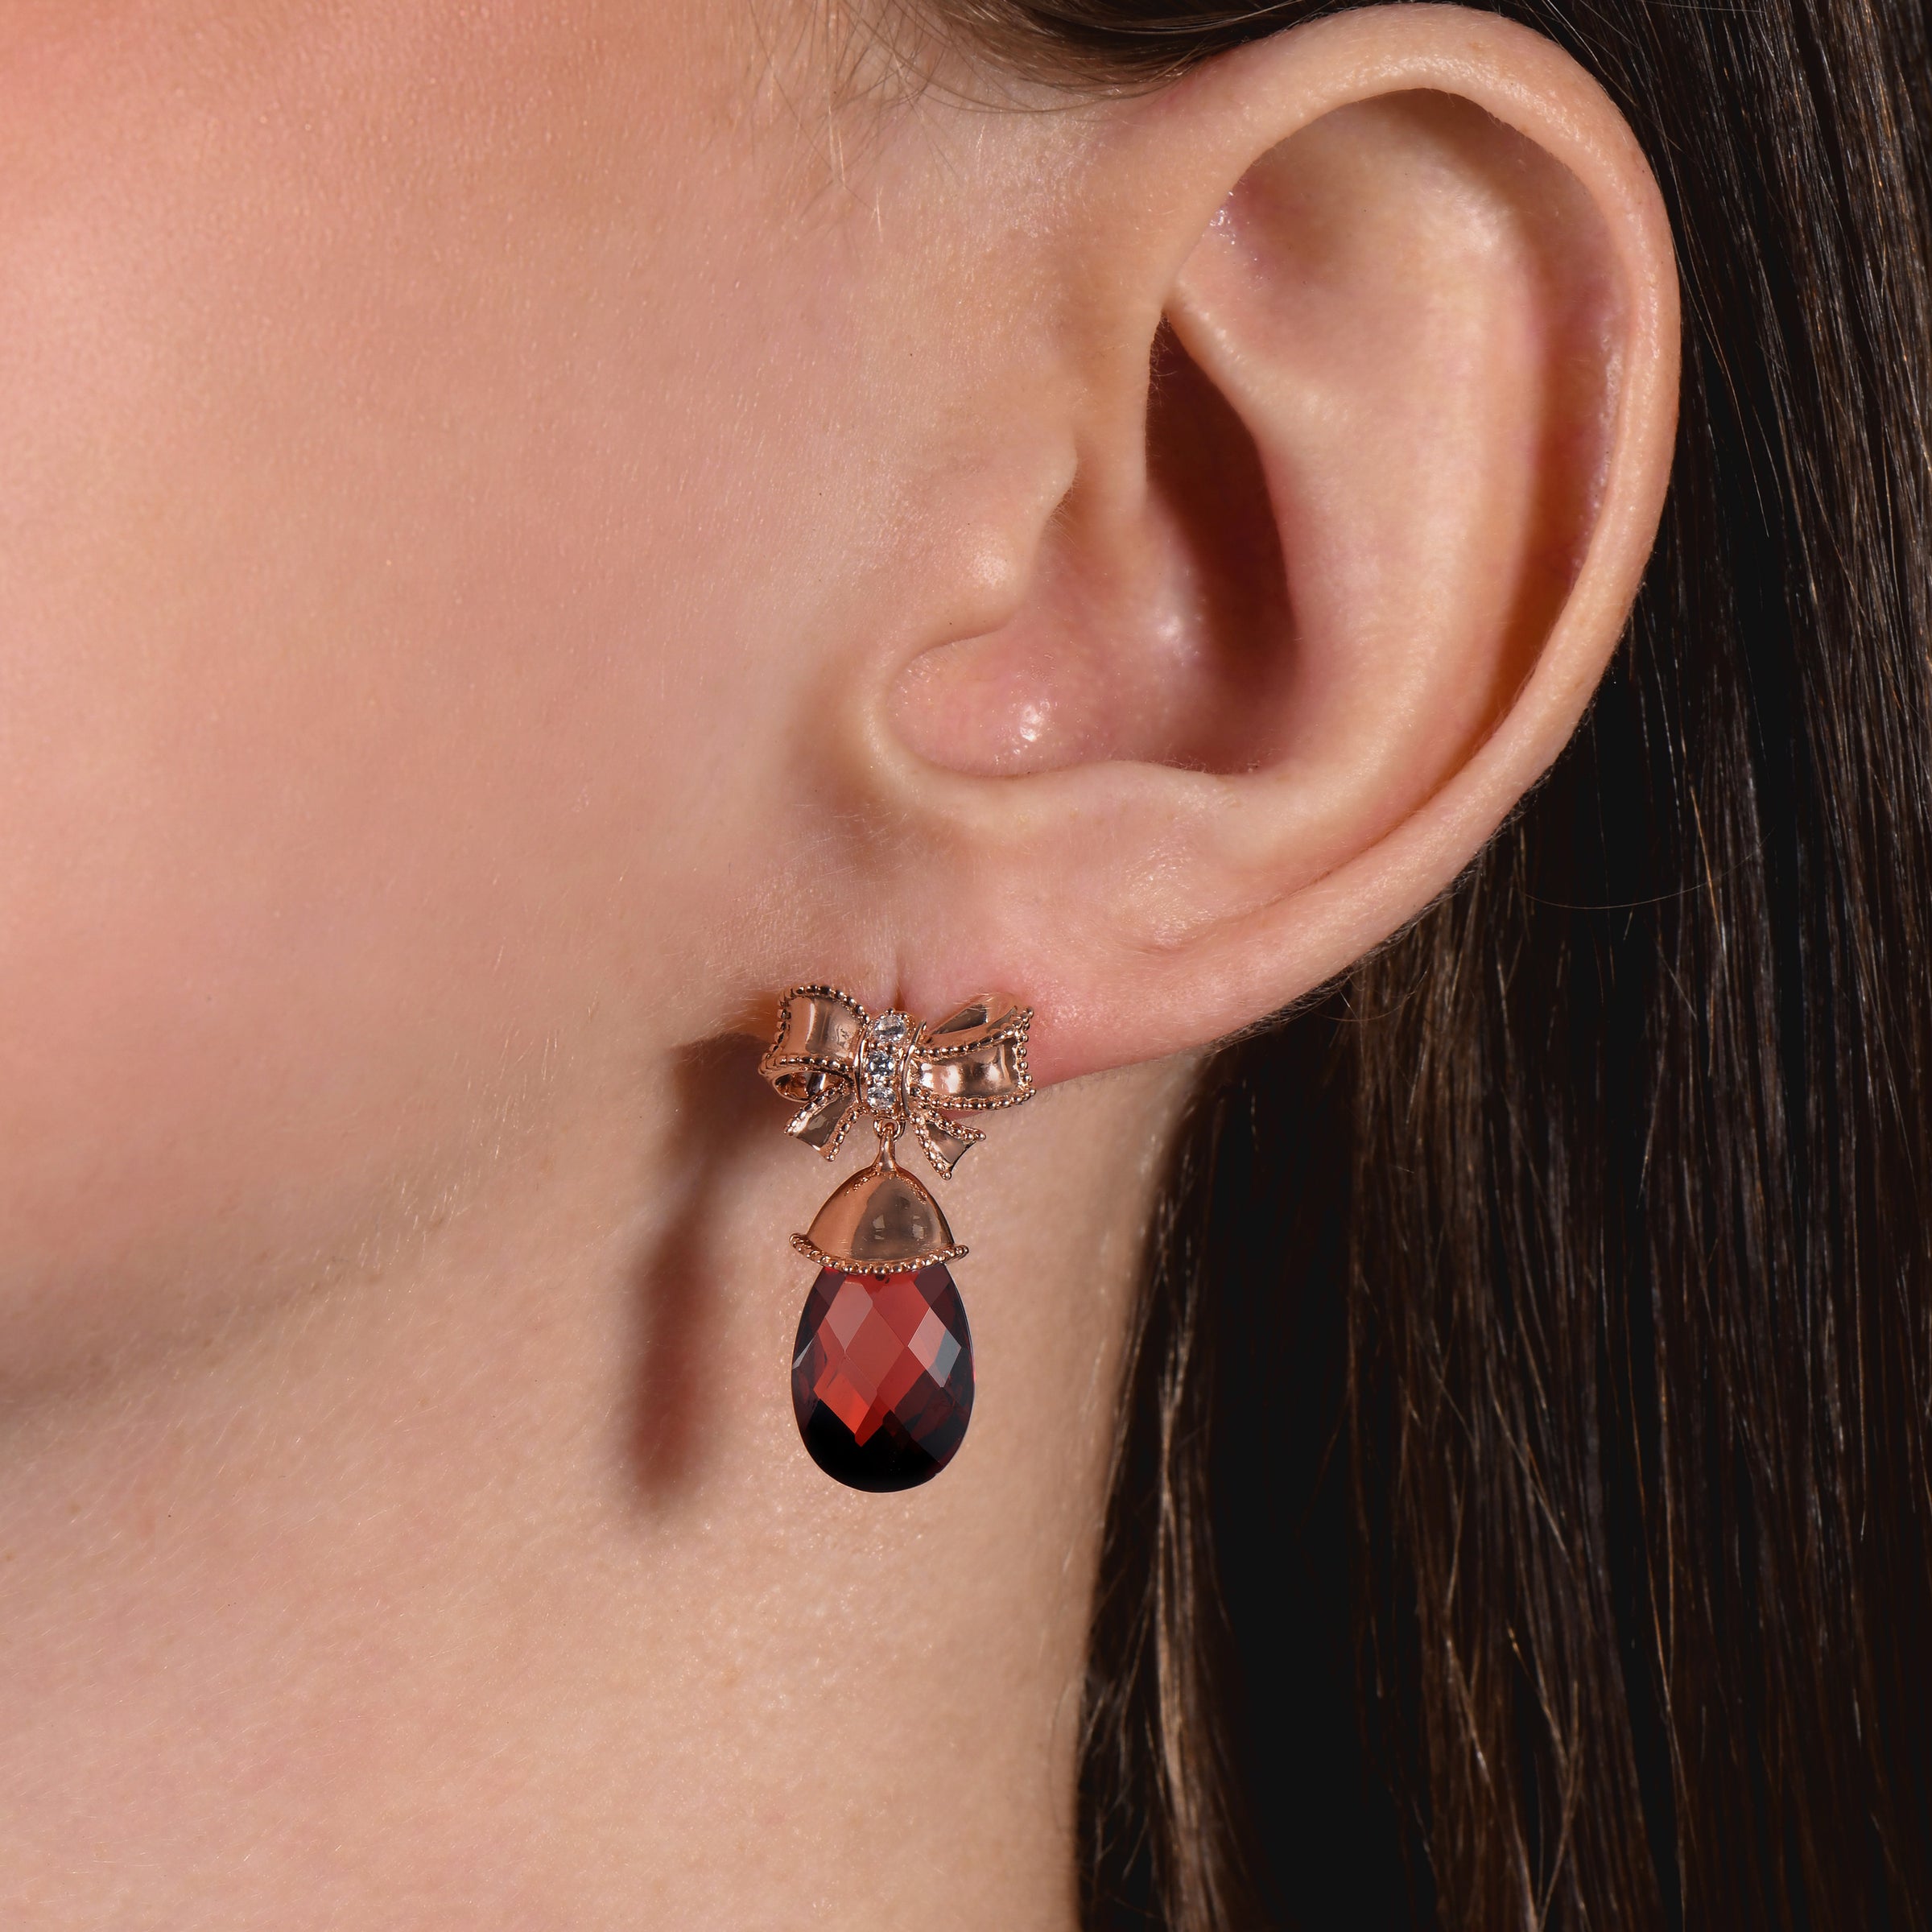 Disney Snow White Inspired Bow Diamond Earrings 1/10 CTTW